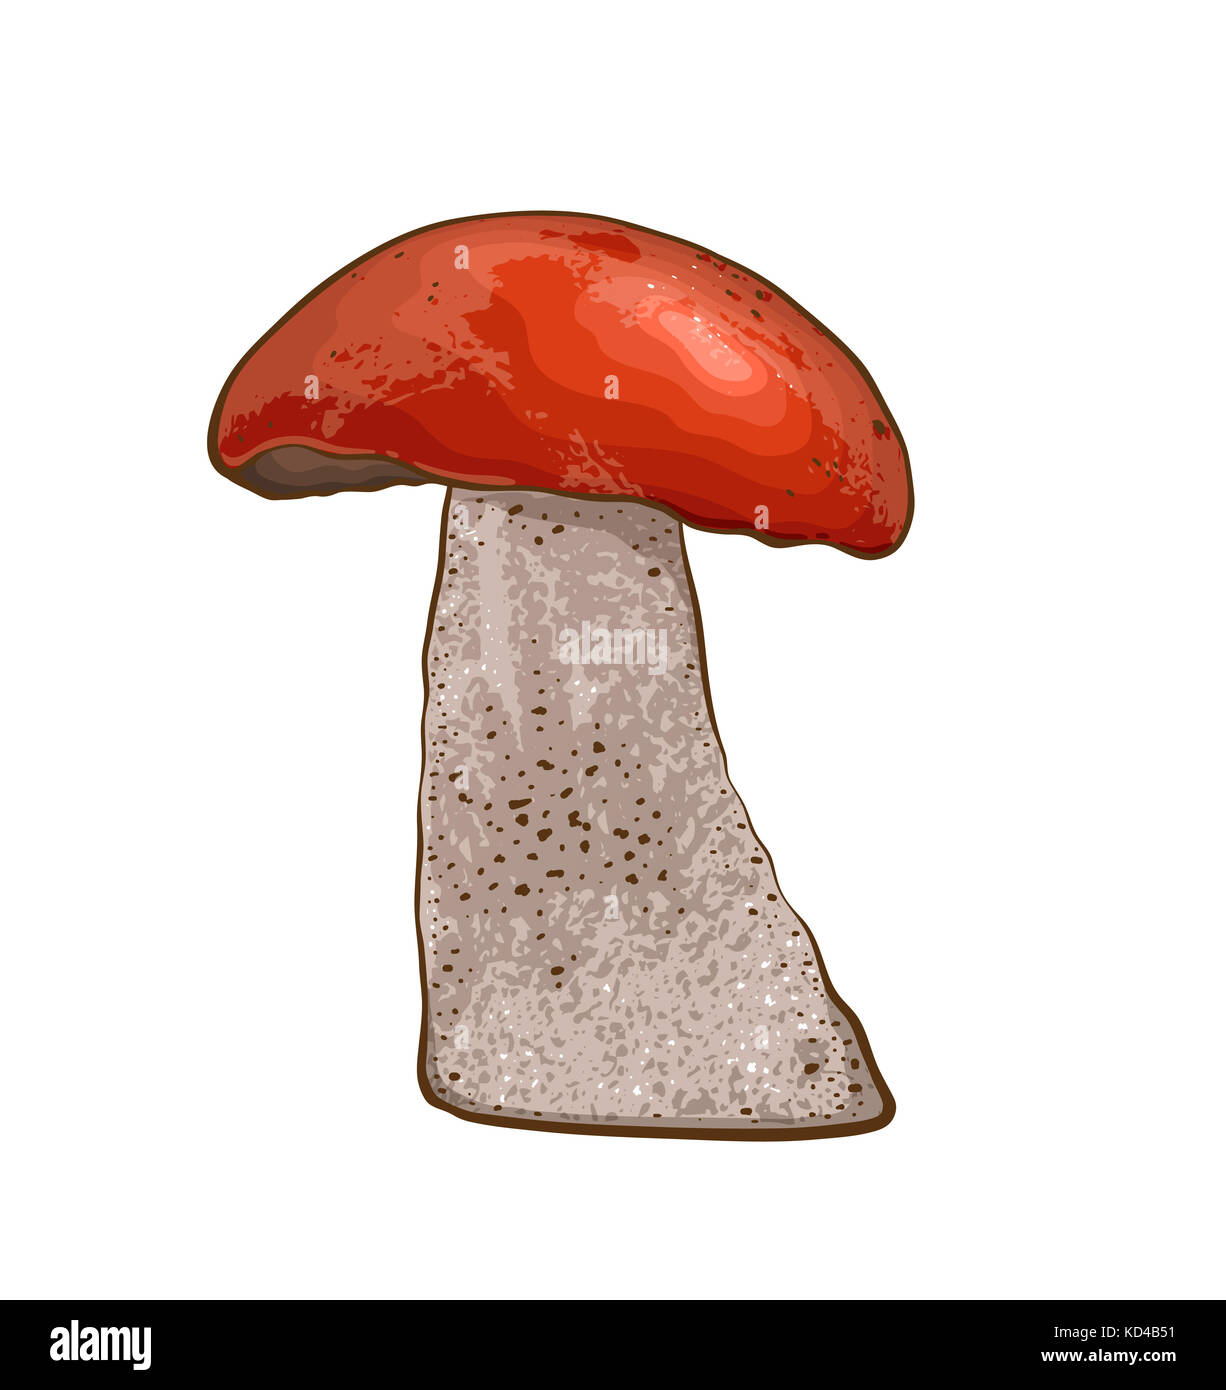 Нарисовать гриб с красной шляпкой